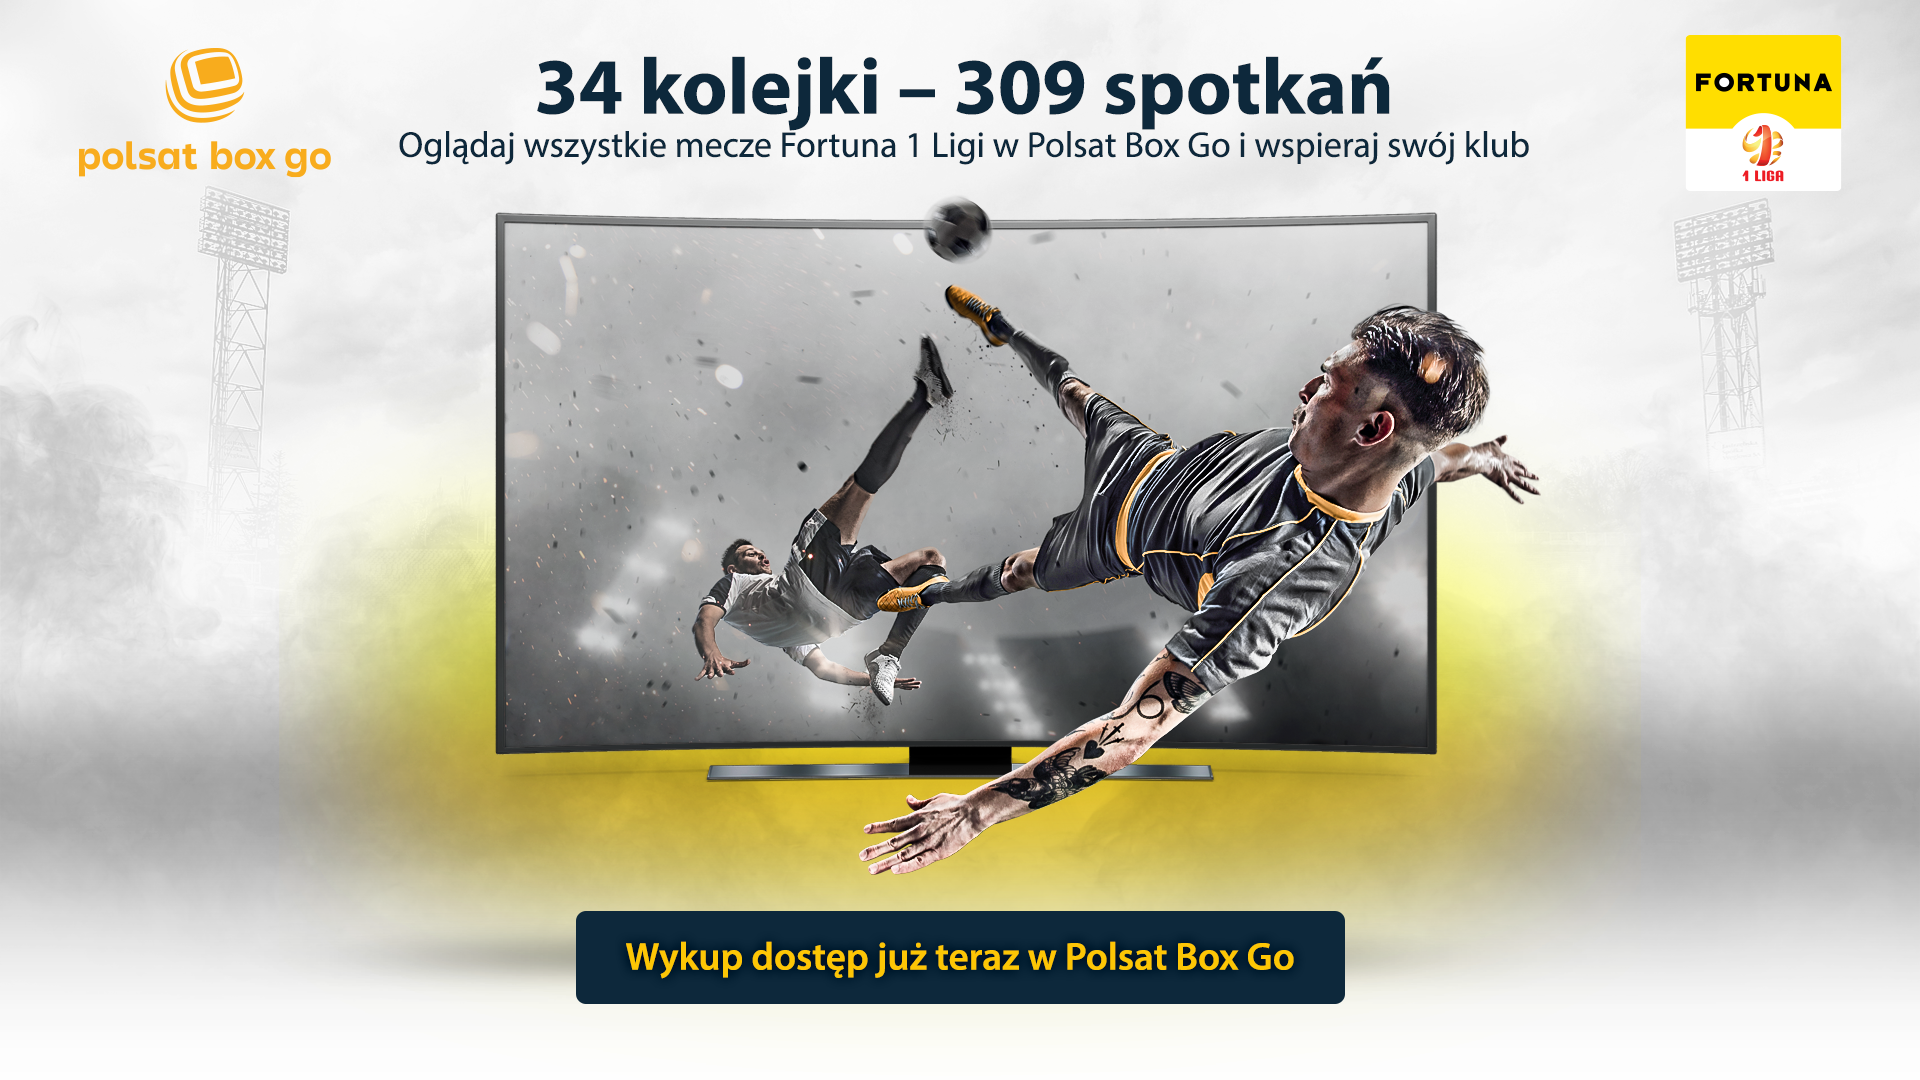 Rusza Polsat Box Go – zmiany w dostępie do transmisji spotkań Fortuna 1 Ligi